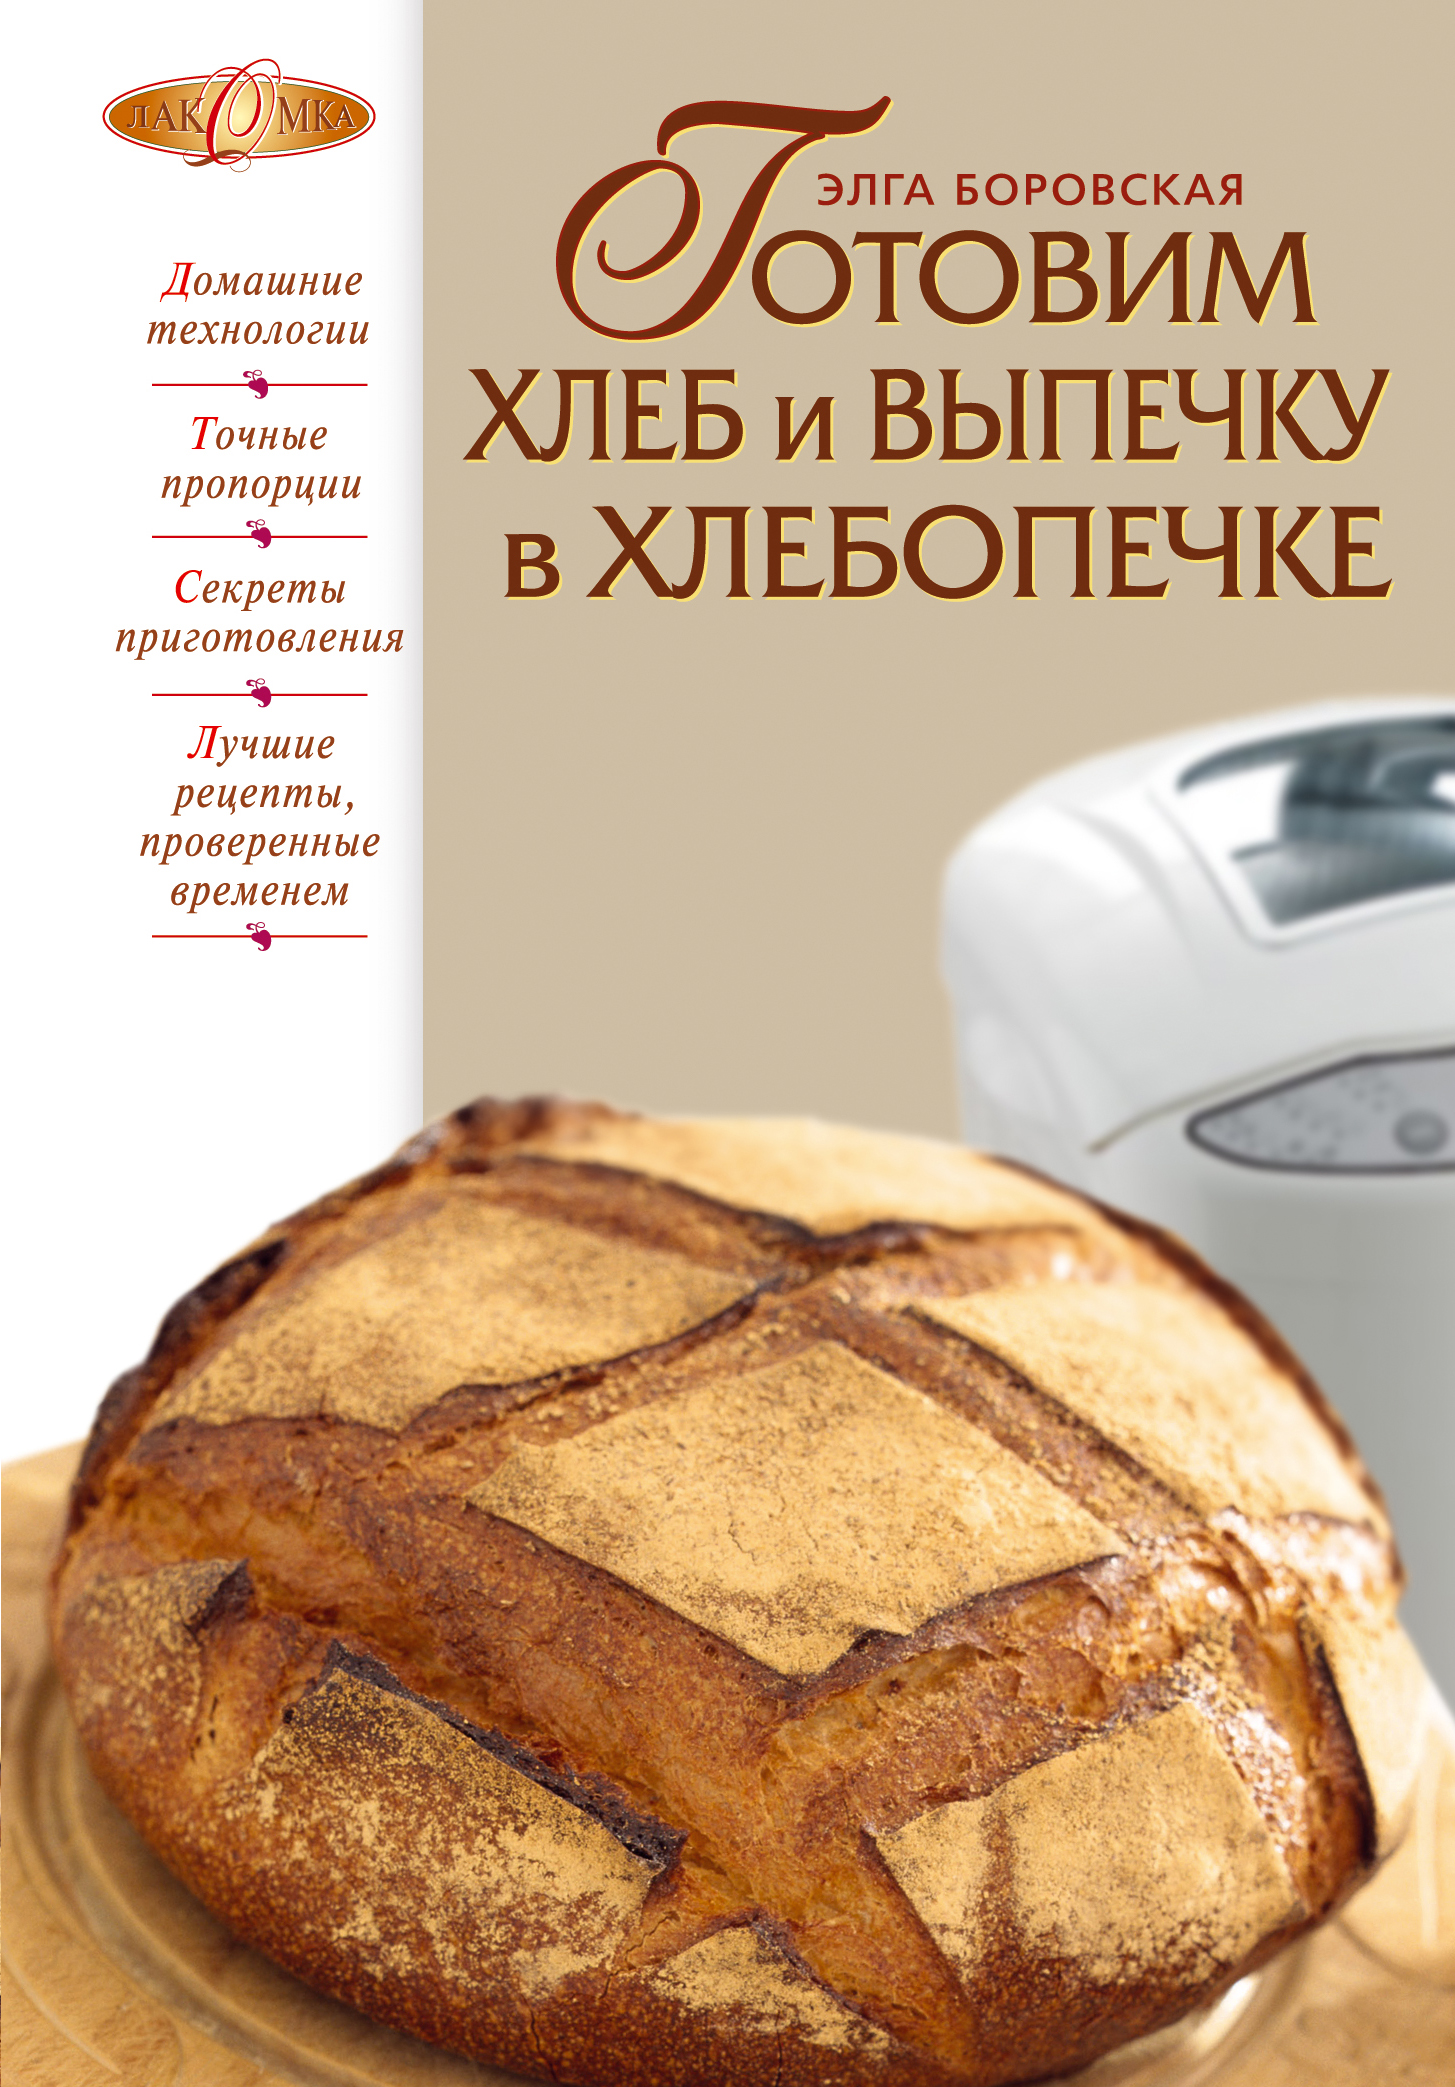 Приготовить в хлебопечке рецепты. Выпечка в хлебопечке. Книжка с рецептами для хлебопечки. Выпечка хлеба в хлебопечке. Хлеб в хлебопечке рецепты книга.